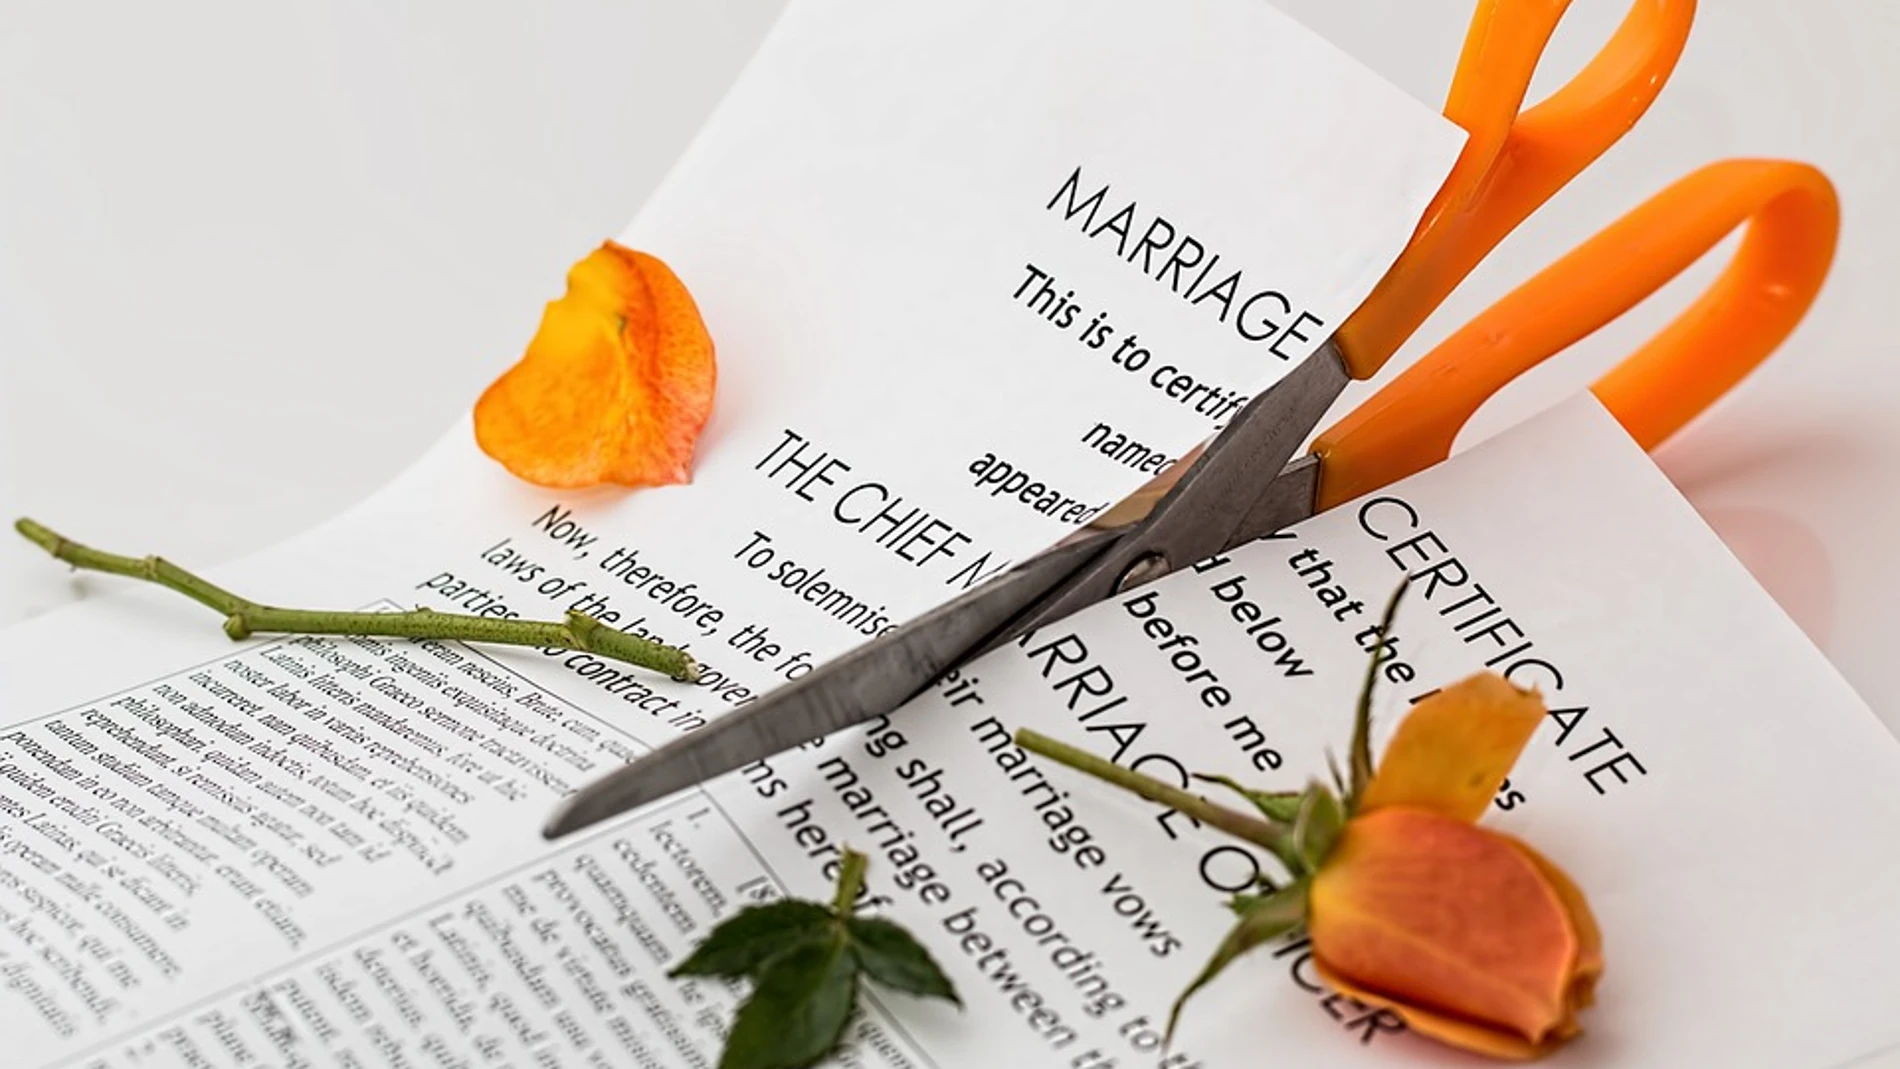 La planificación jurídica del divorcio no solo es posible sino que resulta conveniente y necesaria si se desean prever situaciones indeseadas.